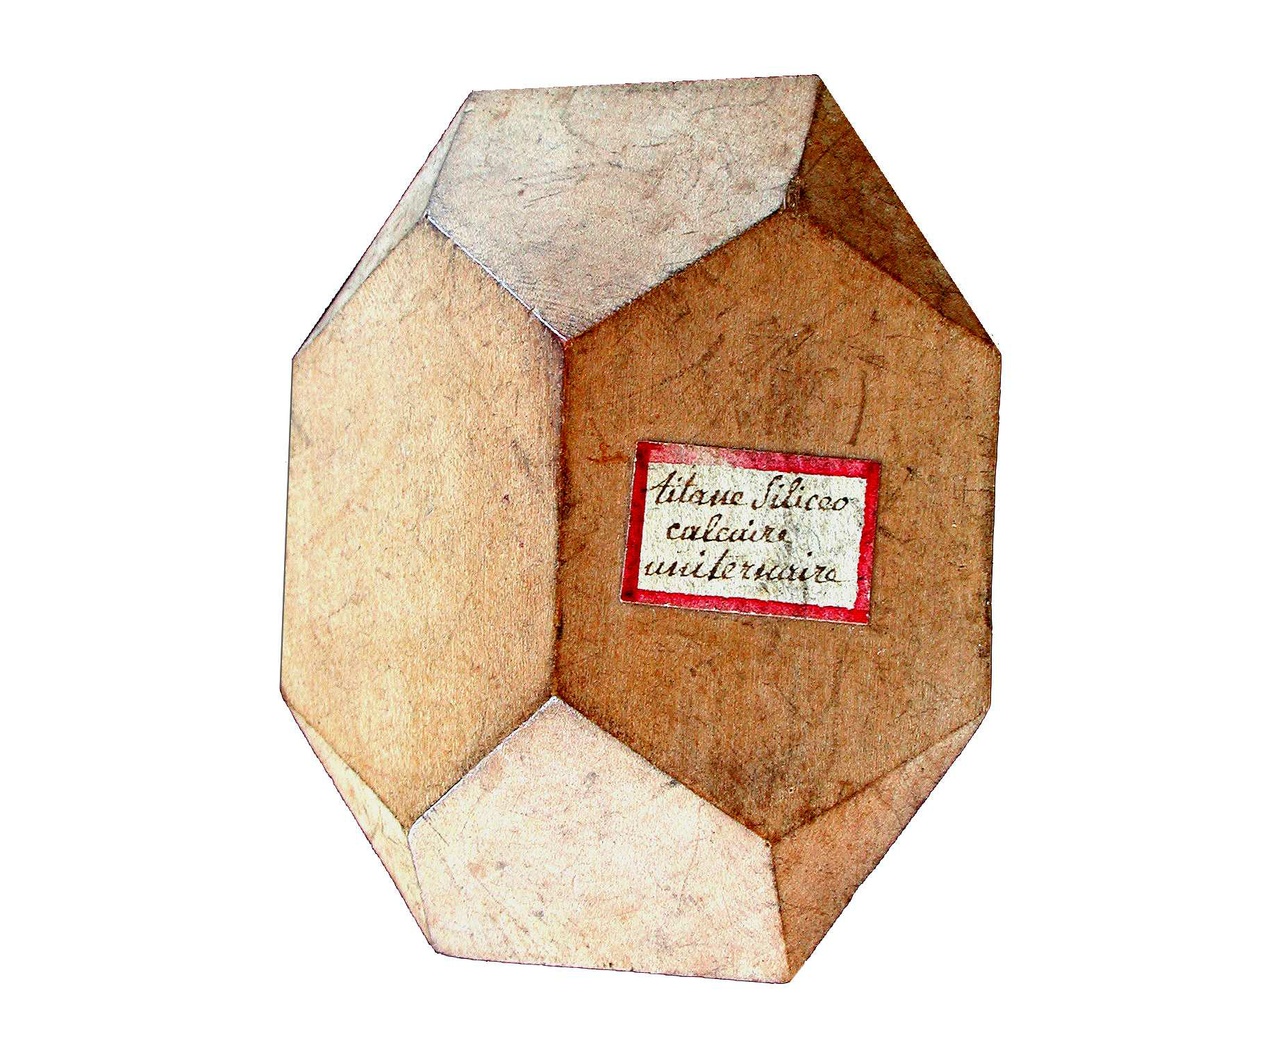 wooden crystal model of titanite, Haüy